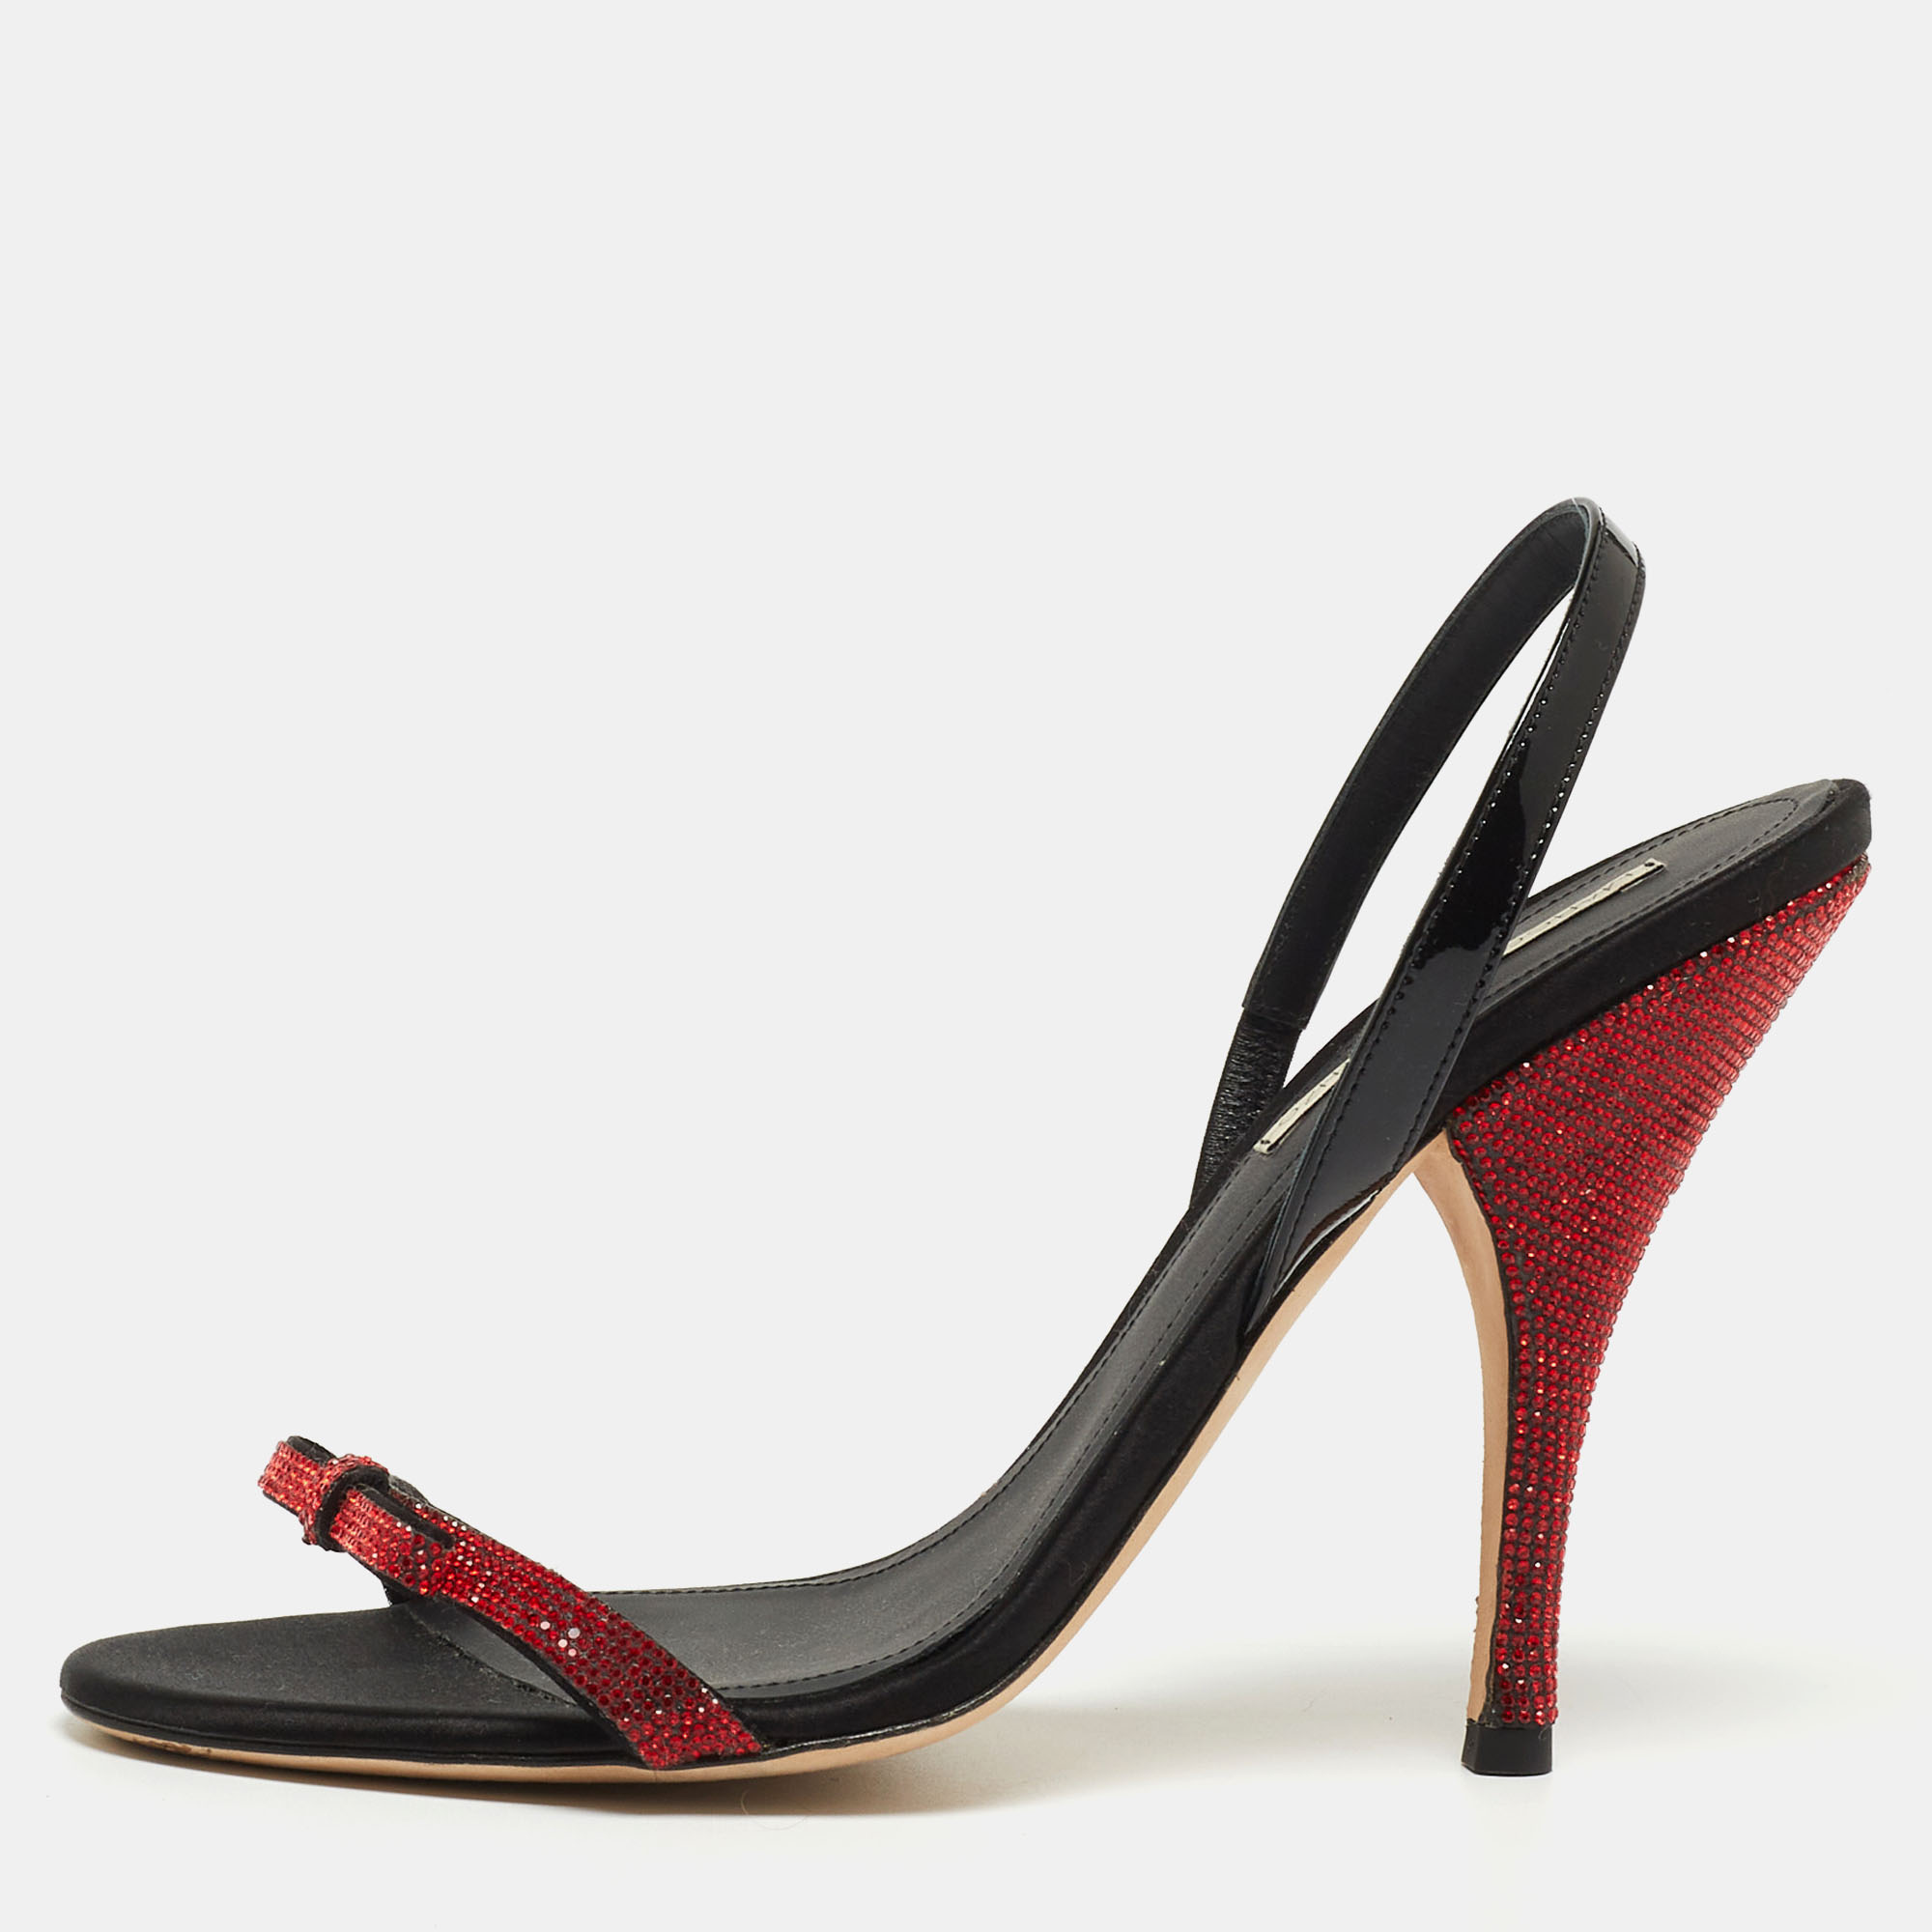 marco de vincenzo red/black crystal embellished leather bow slingback sandals size 39